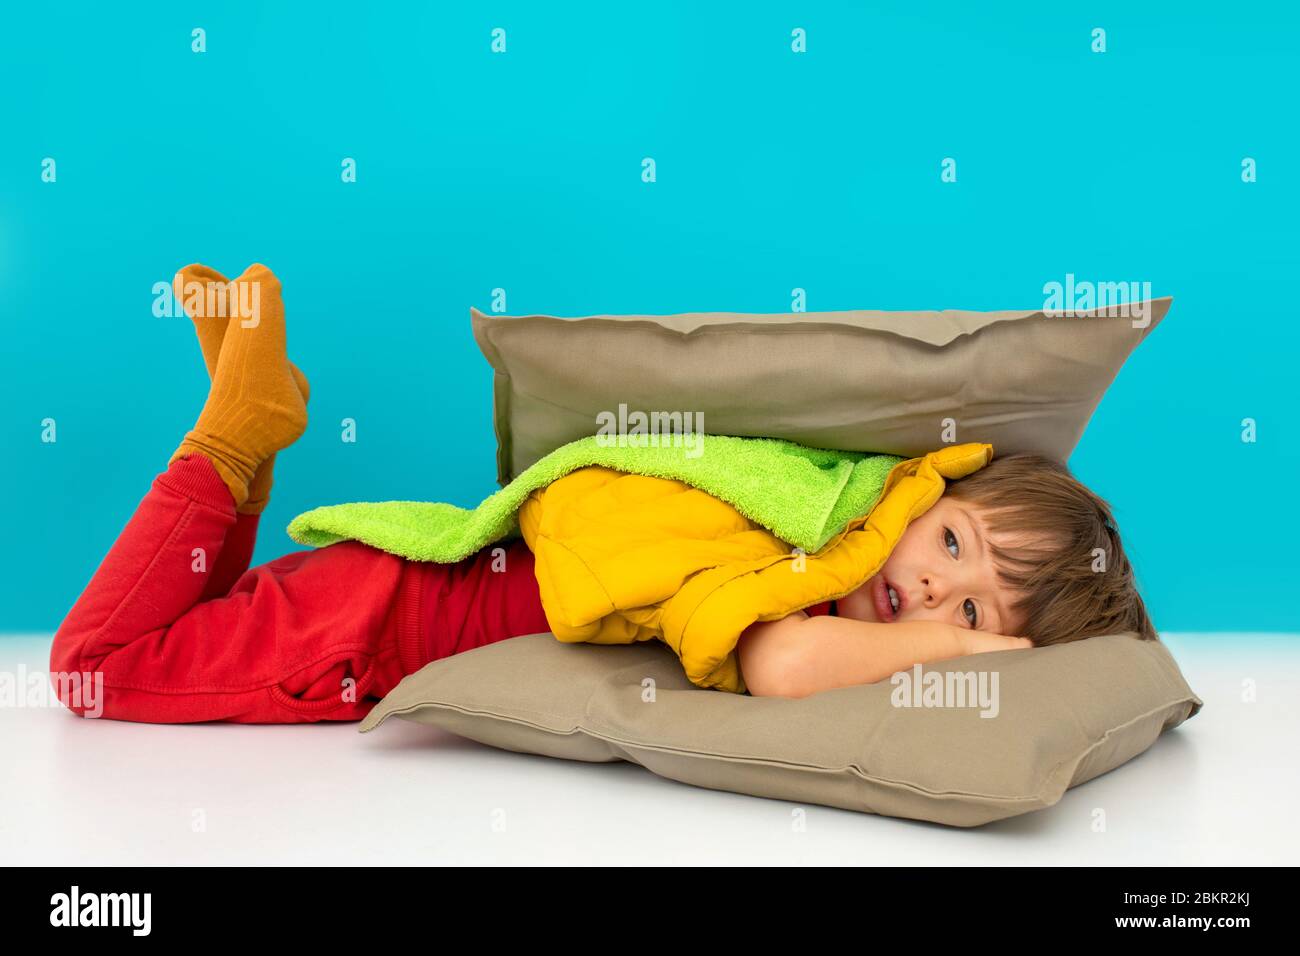 Junge versteckt in Kissen auf blauem Hintergrund Stockfoto